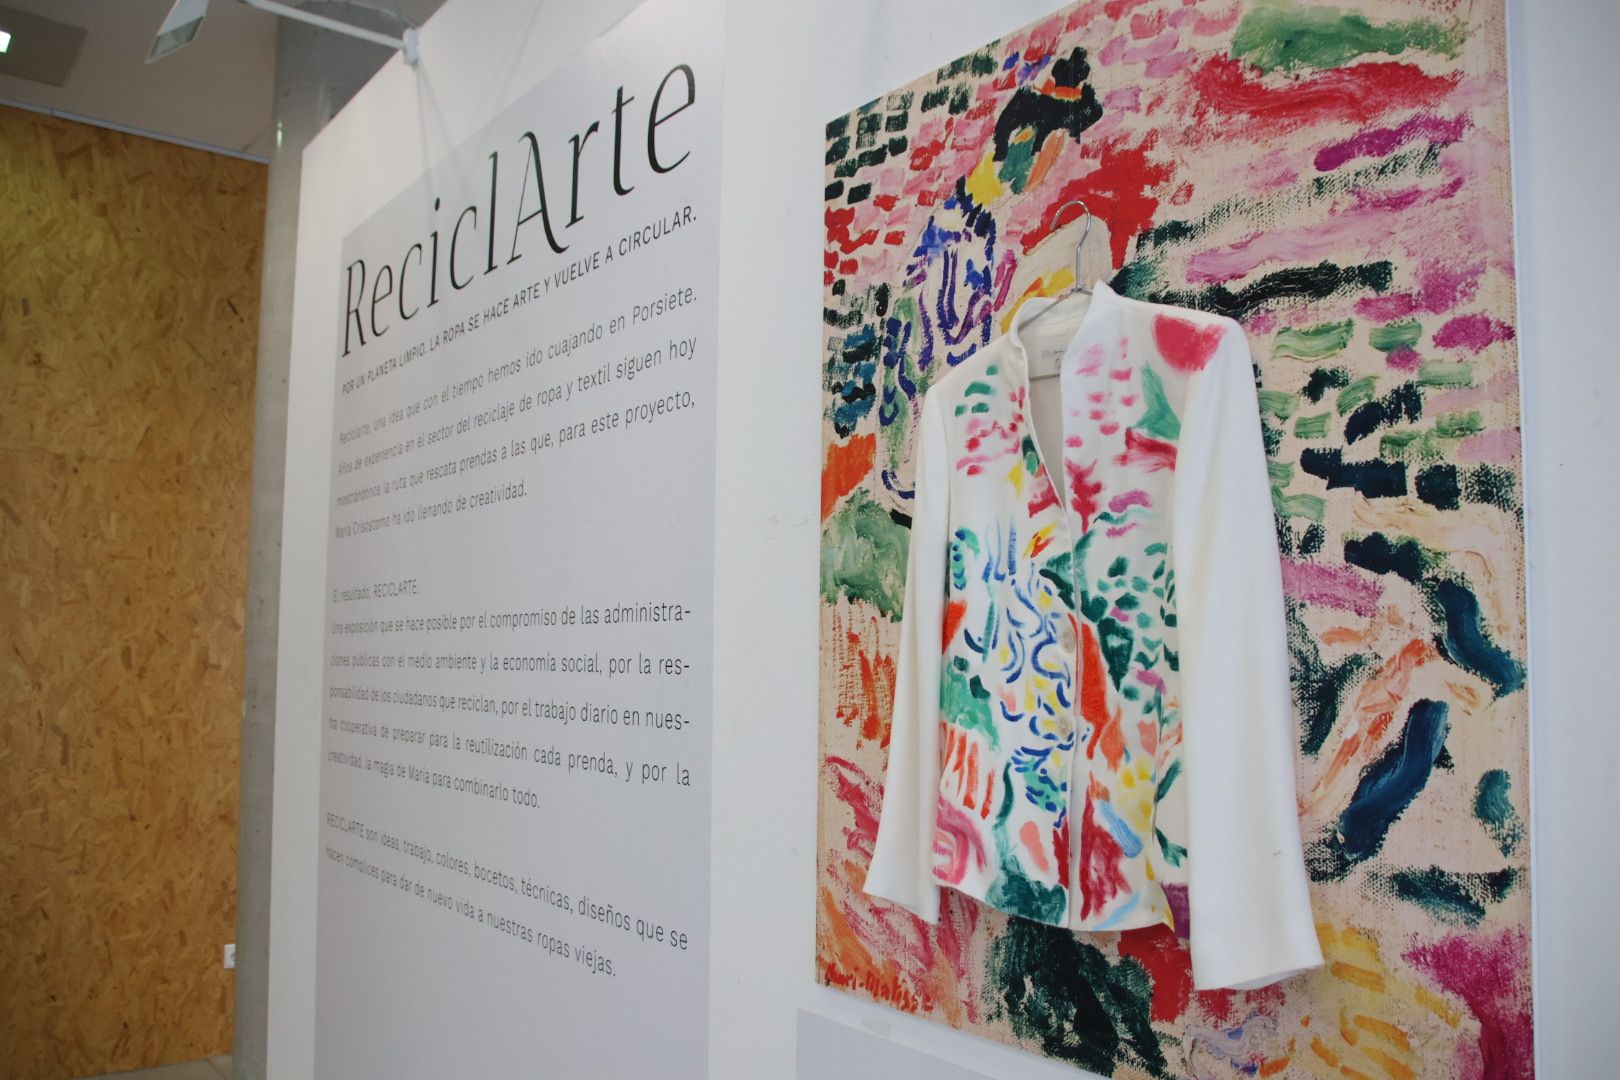 Exposición 'Reciclarte" de Porsiete